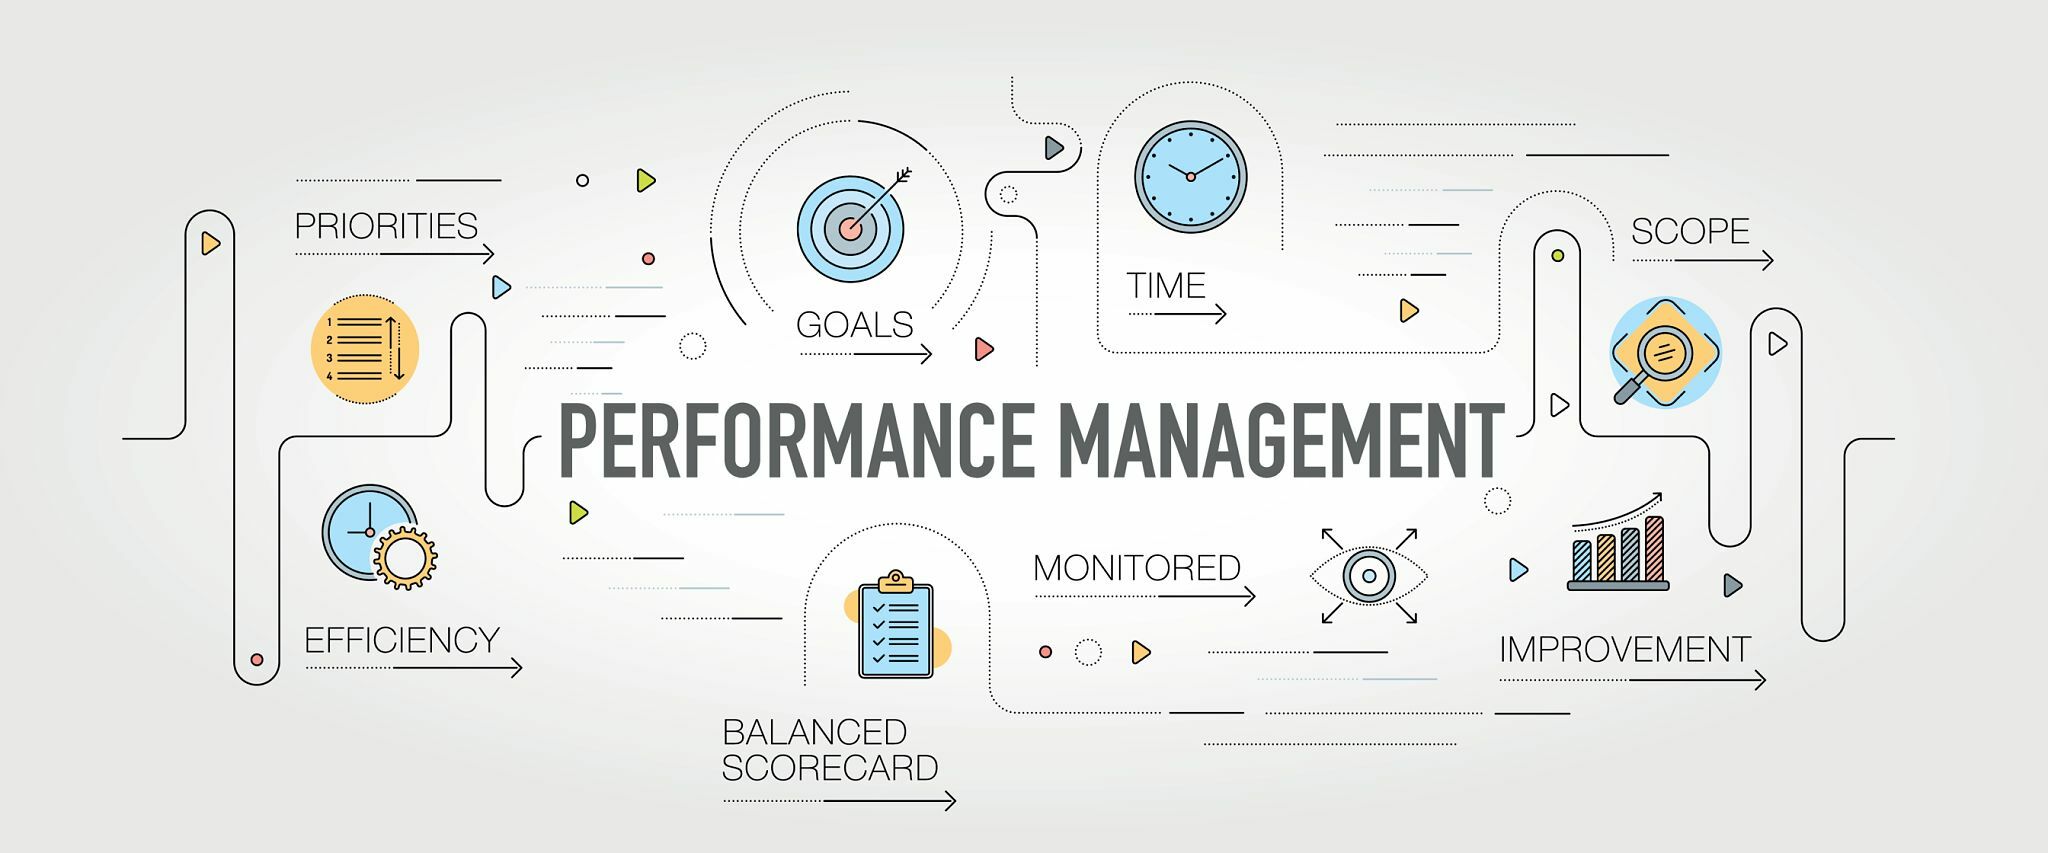 10 استراتيجيات لتعظيم فوائد برنامج إدارة الأداء الخاص بك